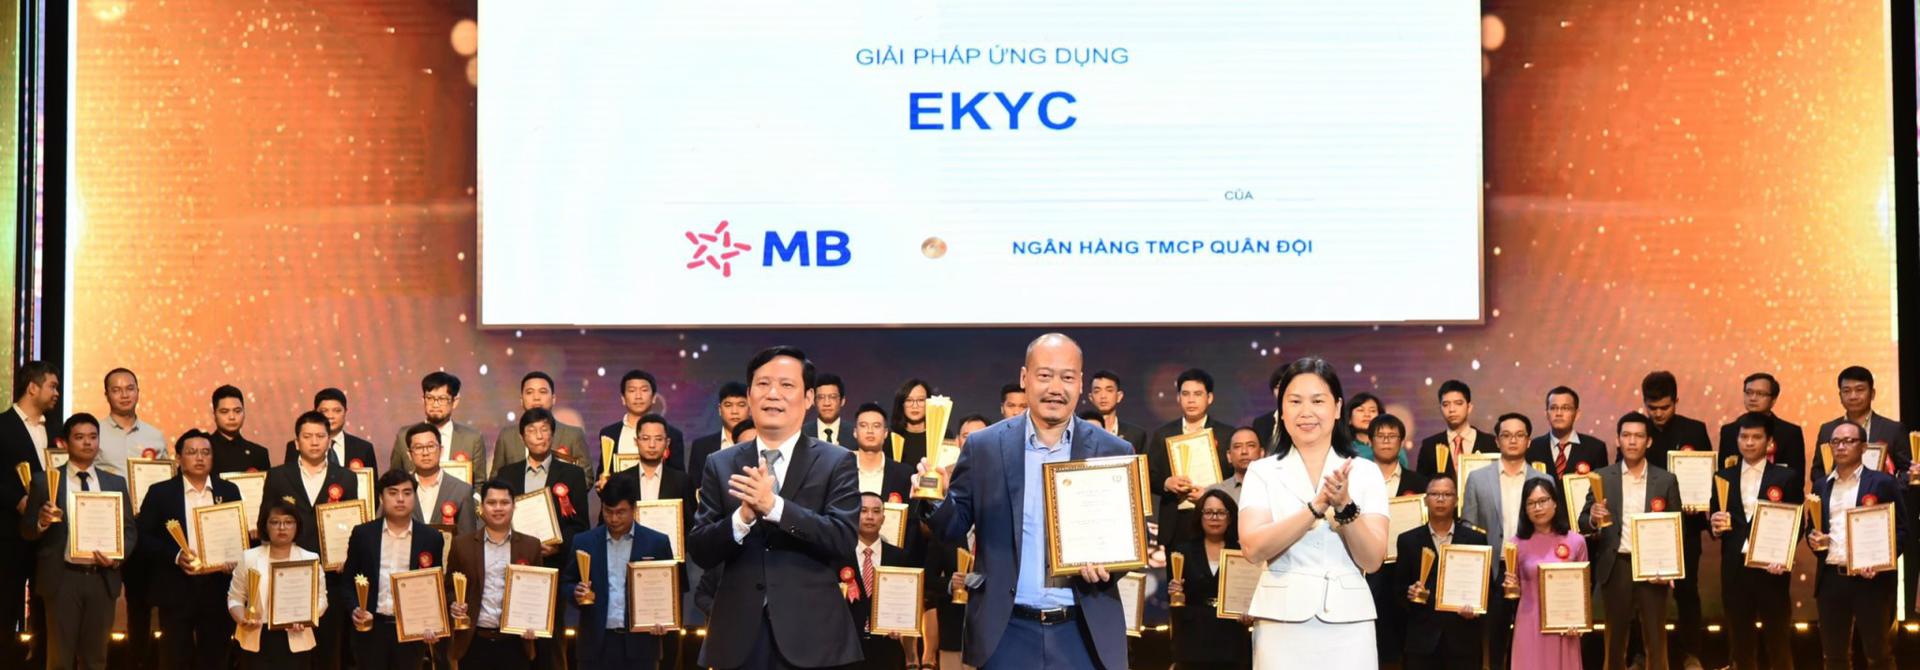 Giải pháp eKYC của MB giành giải thưởng “Sao Khuê 2021”